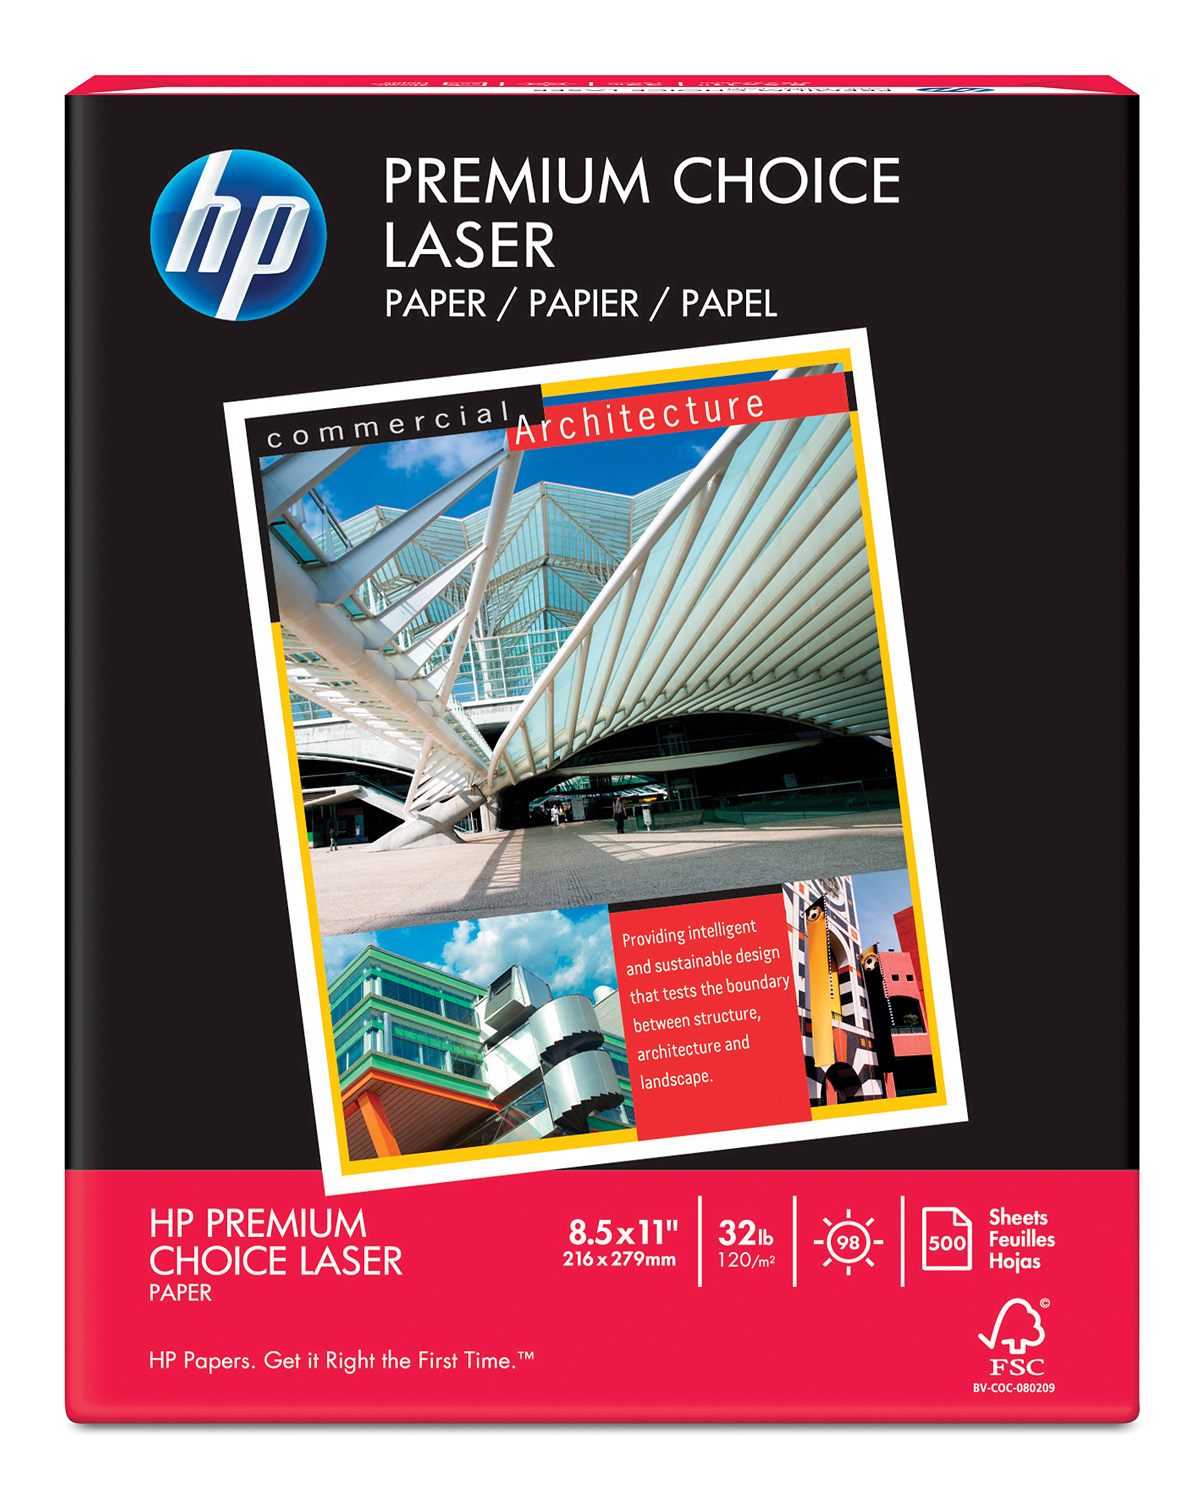  HP Paper Printer, 8.5 x 11 Paper, Premium 32 lb, 1 Ream -  500 Sheets, 100 Bright, Made in USA - FSC Certified